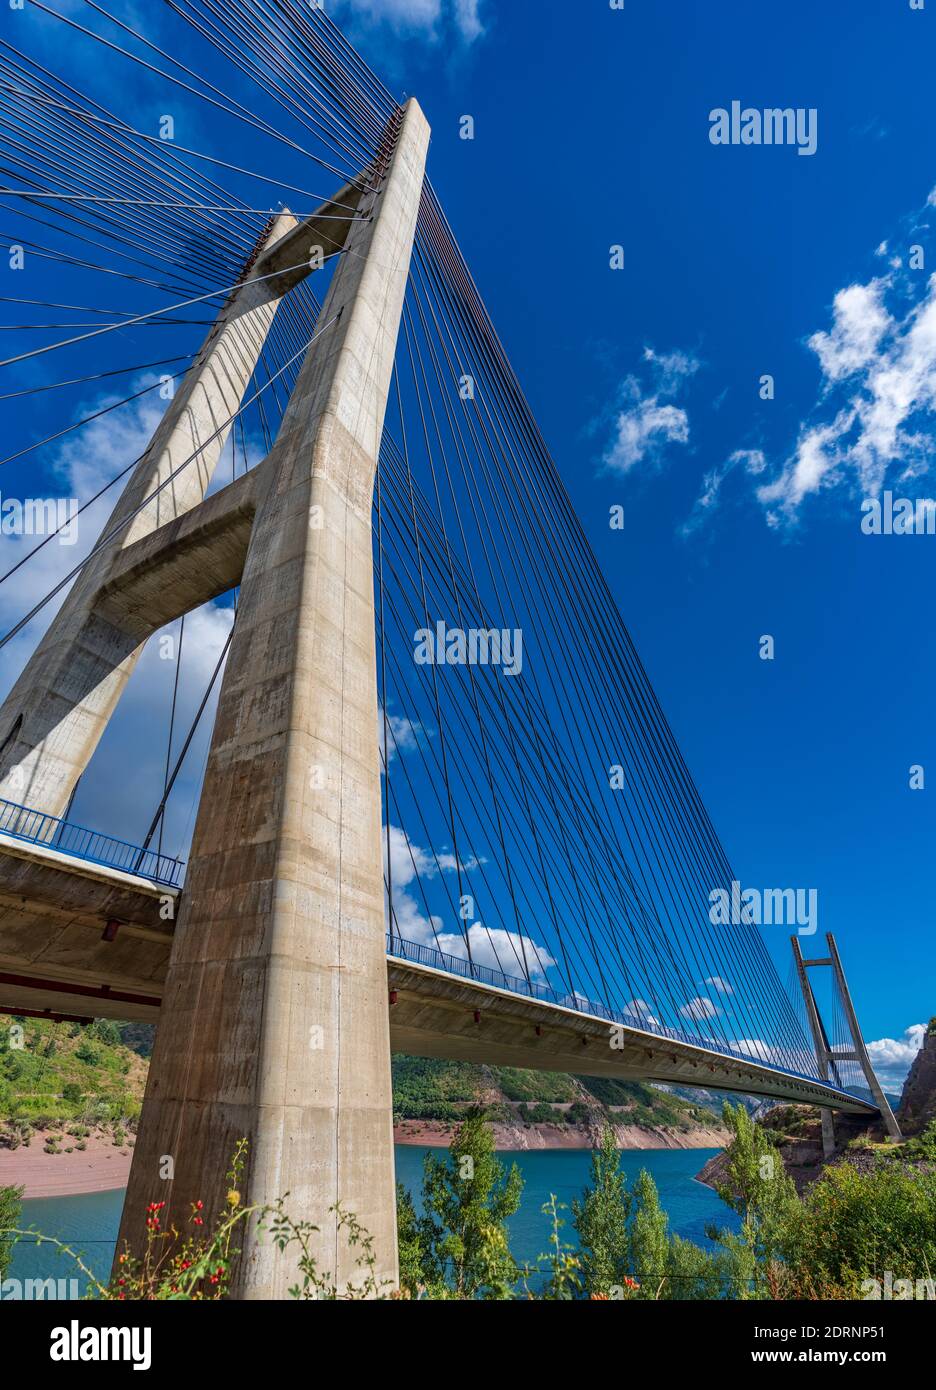 Riesige Hängebrücke und Damm über blauem Himmel, vertikale Komposition Stockfoto